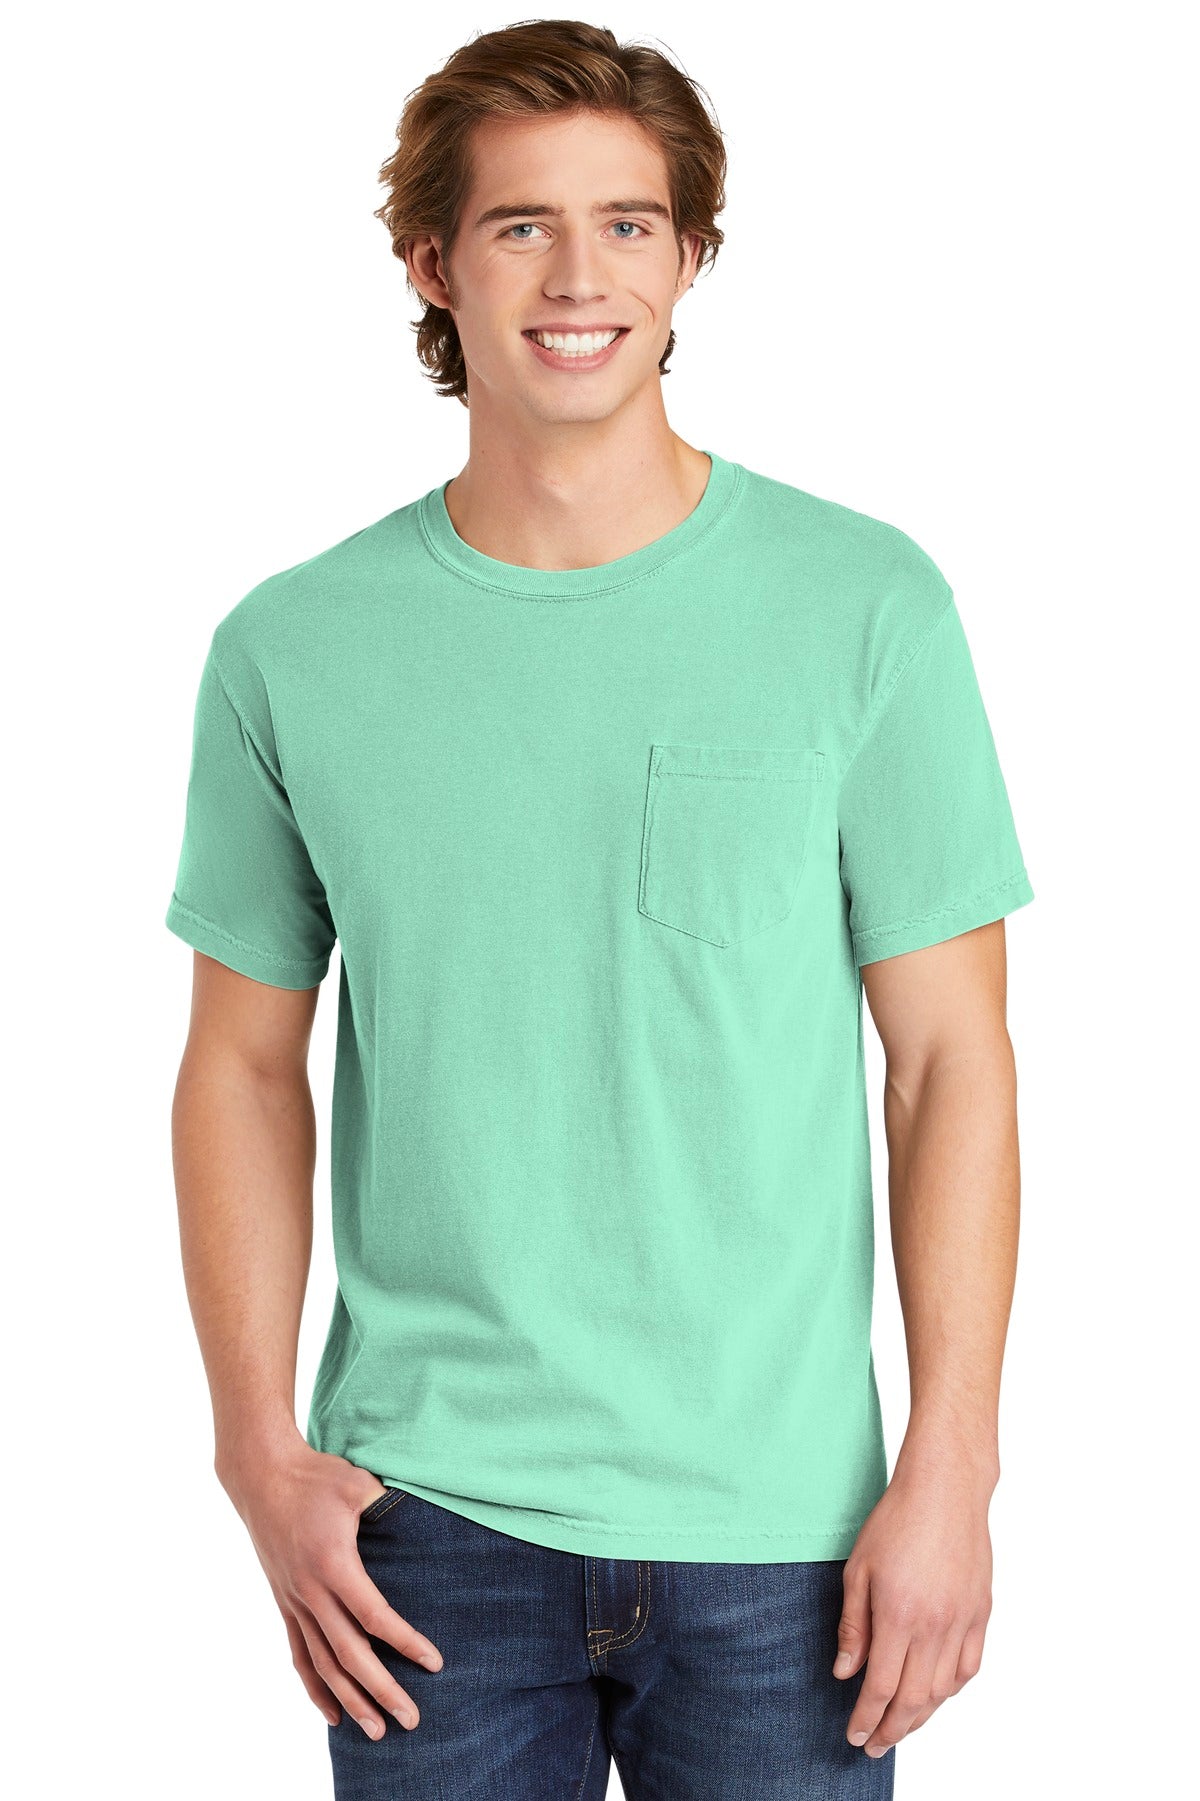 T-Shirts Island Reef Comfort Colors